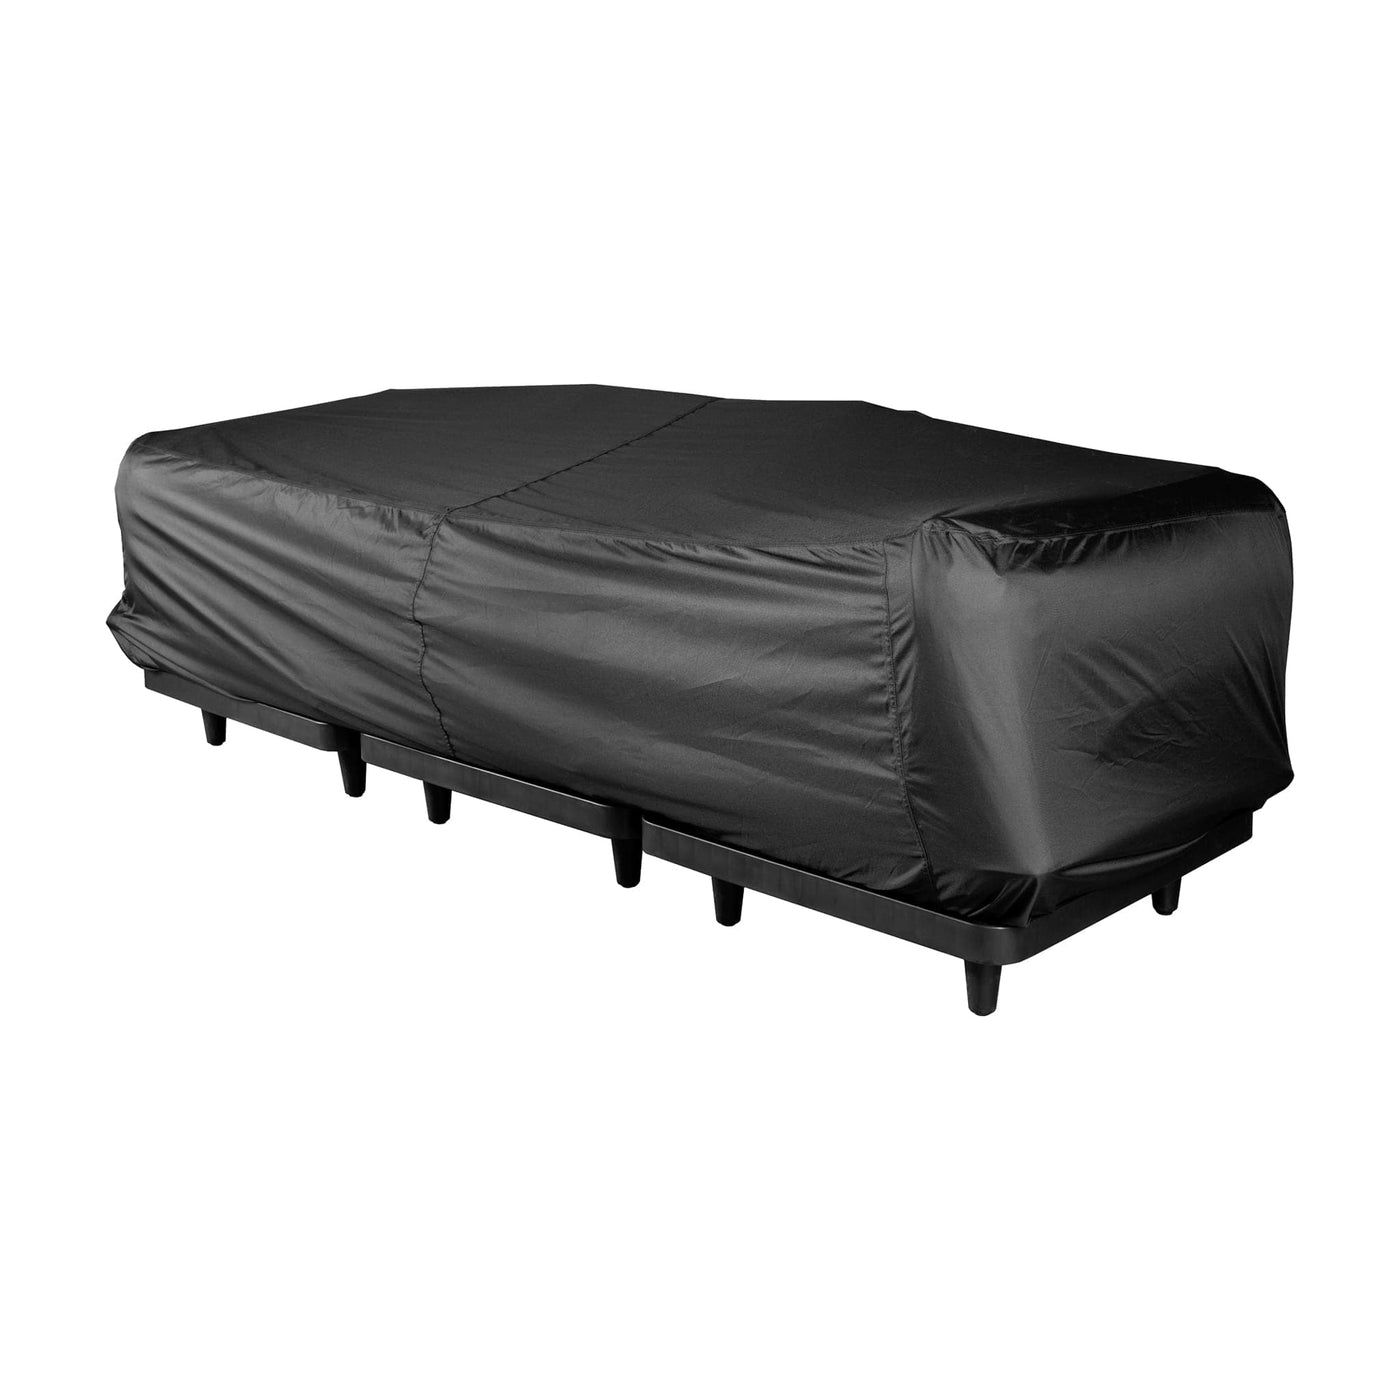 Préservez votre sofa Paletti avec la housse Fatboy, conçue pour résister à la pluie, la neige et les UV. 3 sièges